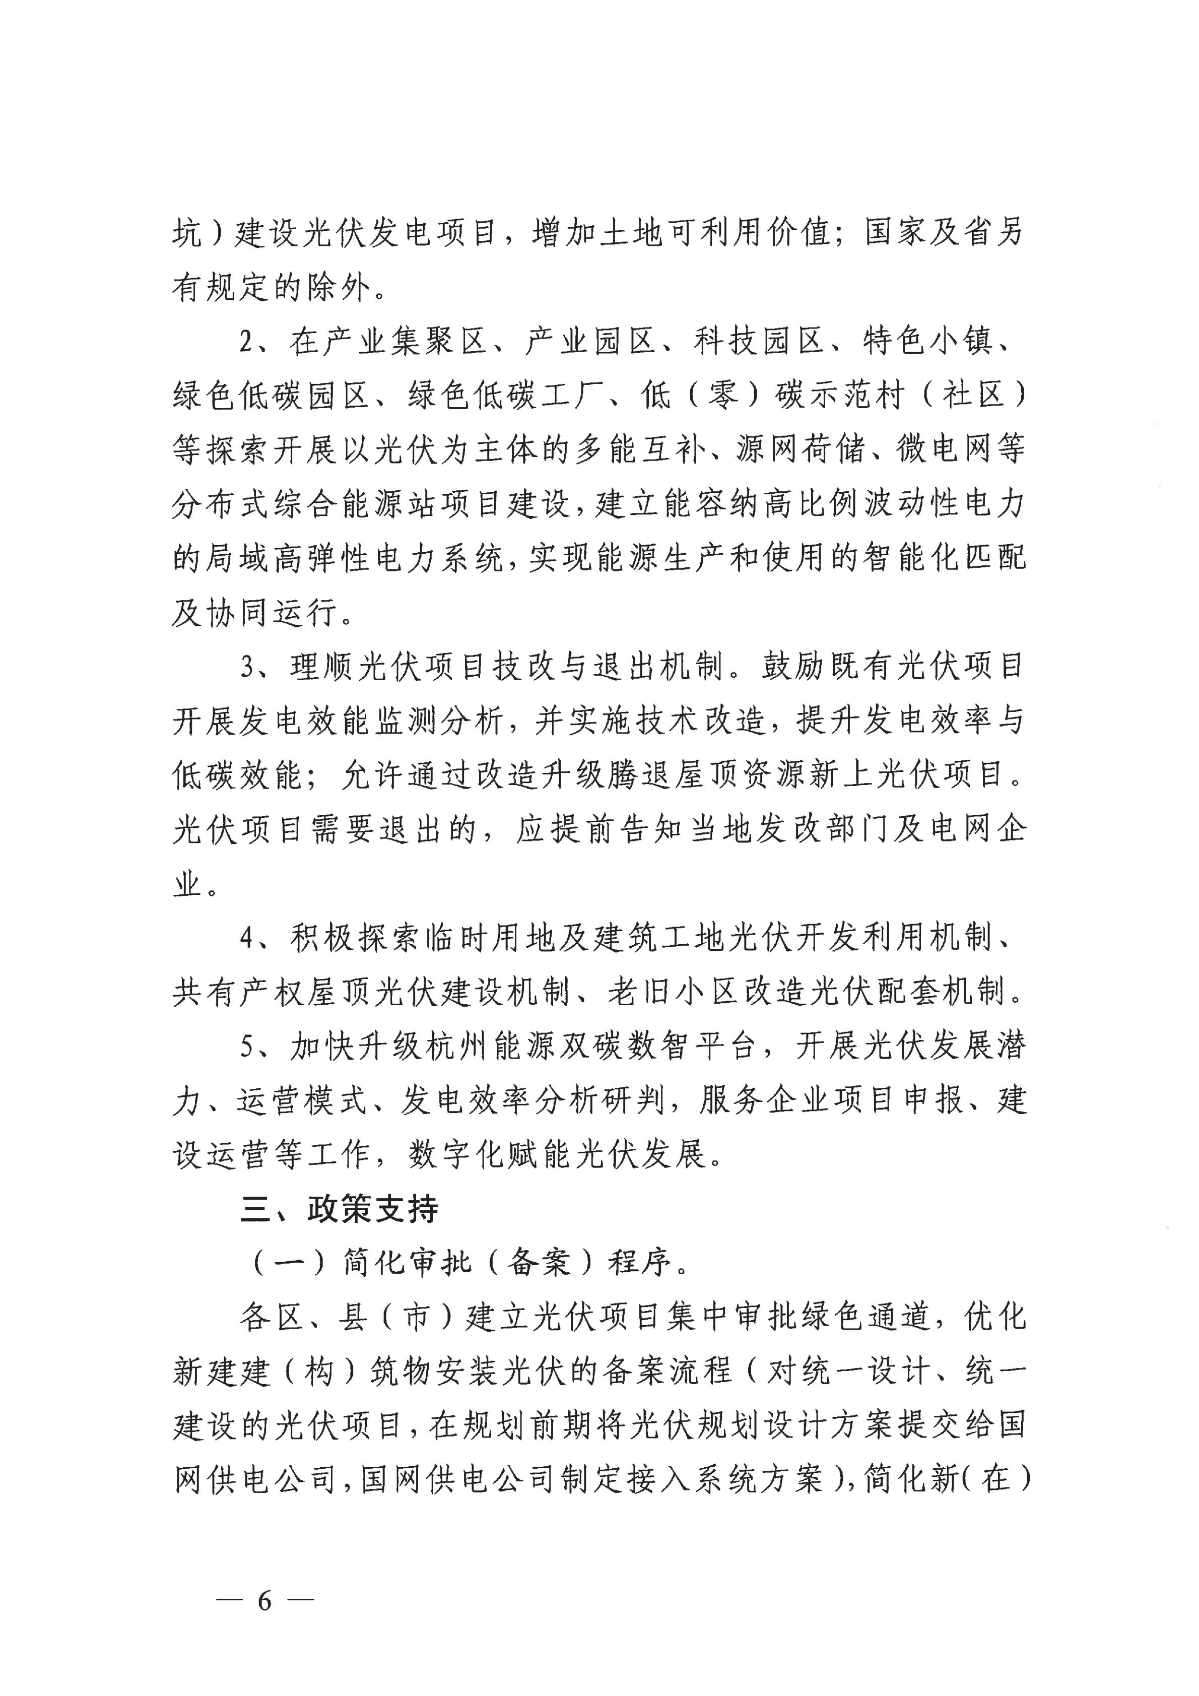 1128关于印发《关于进一步加快杭州市光伏发电项目建设的实施意见》的通知_05.jpg